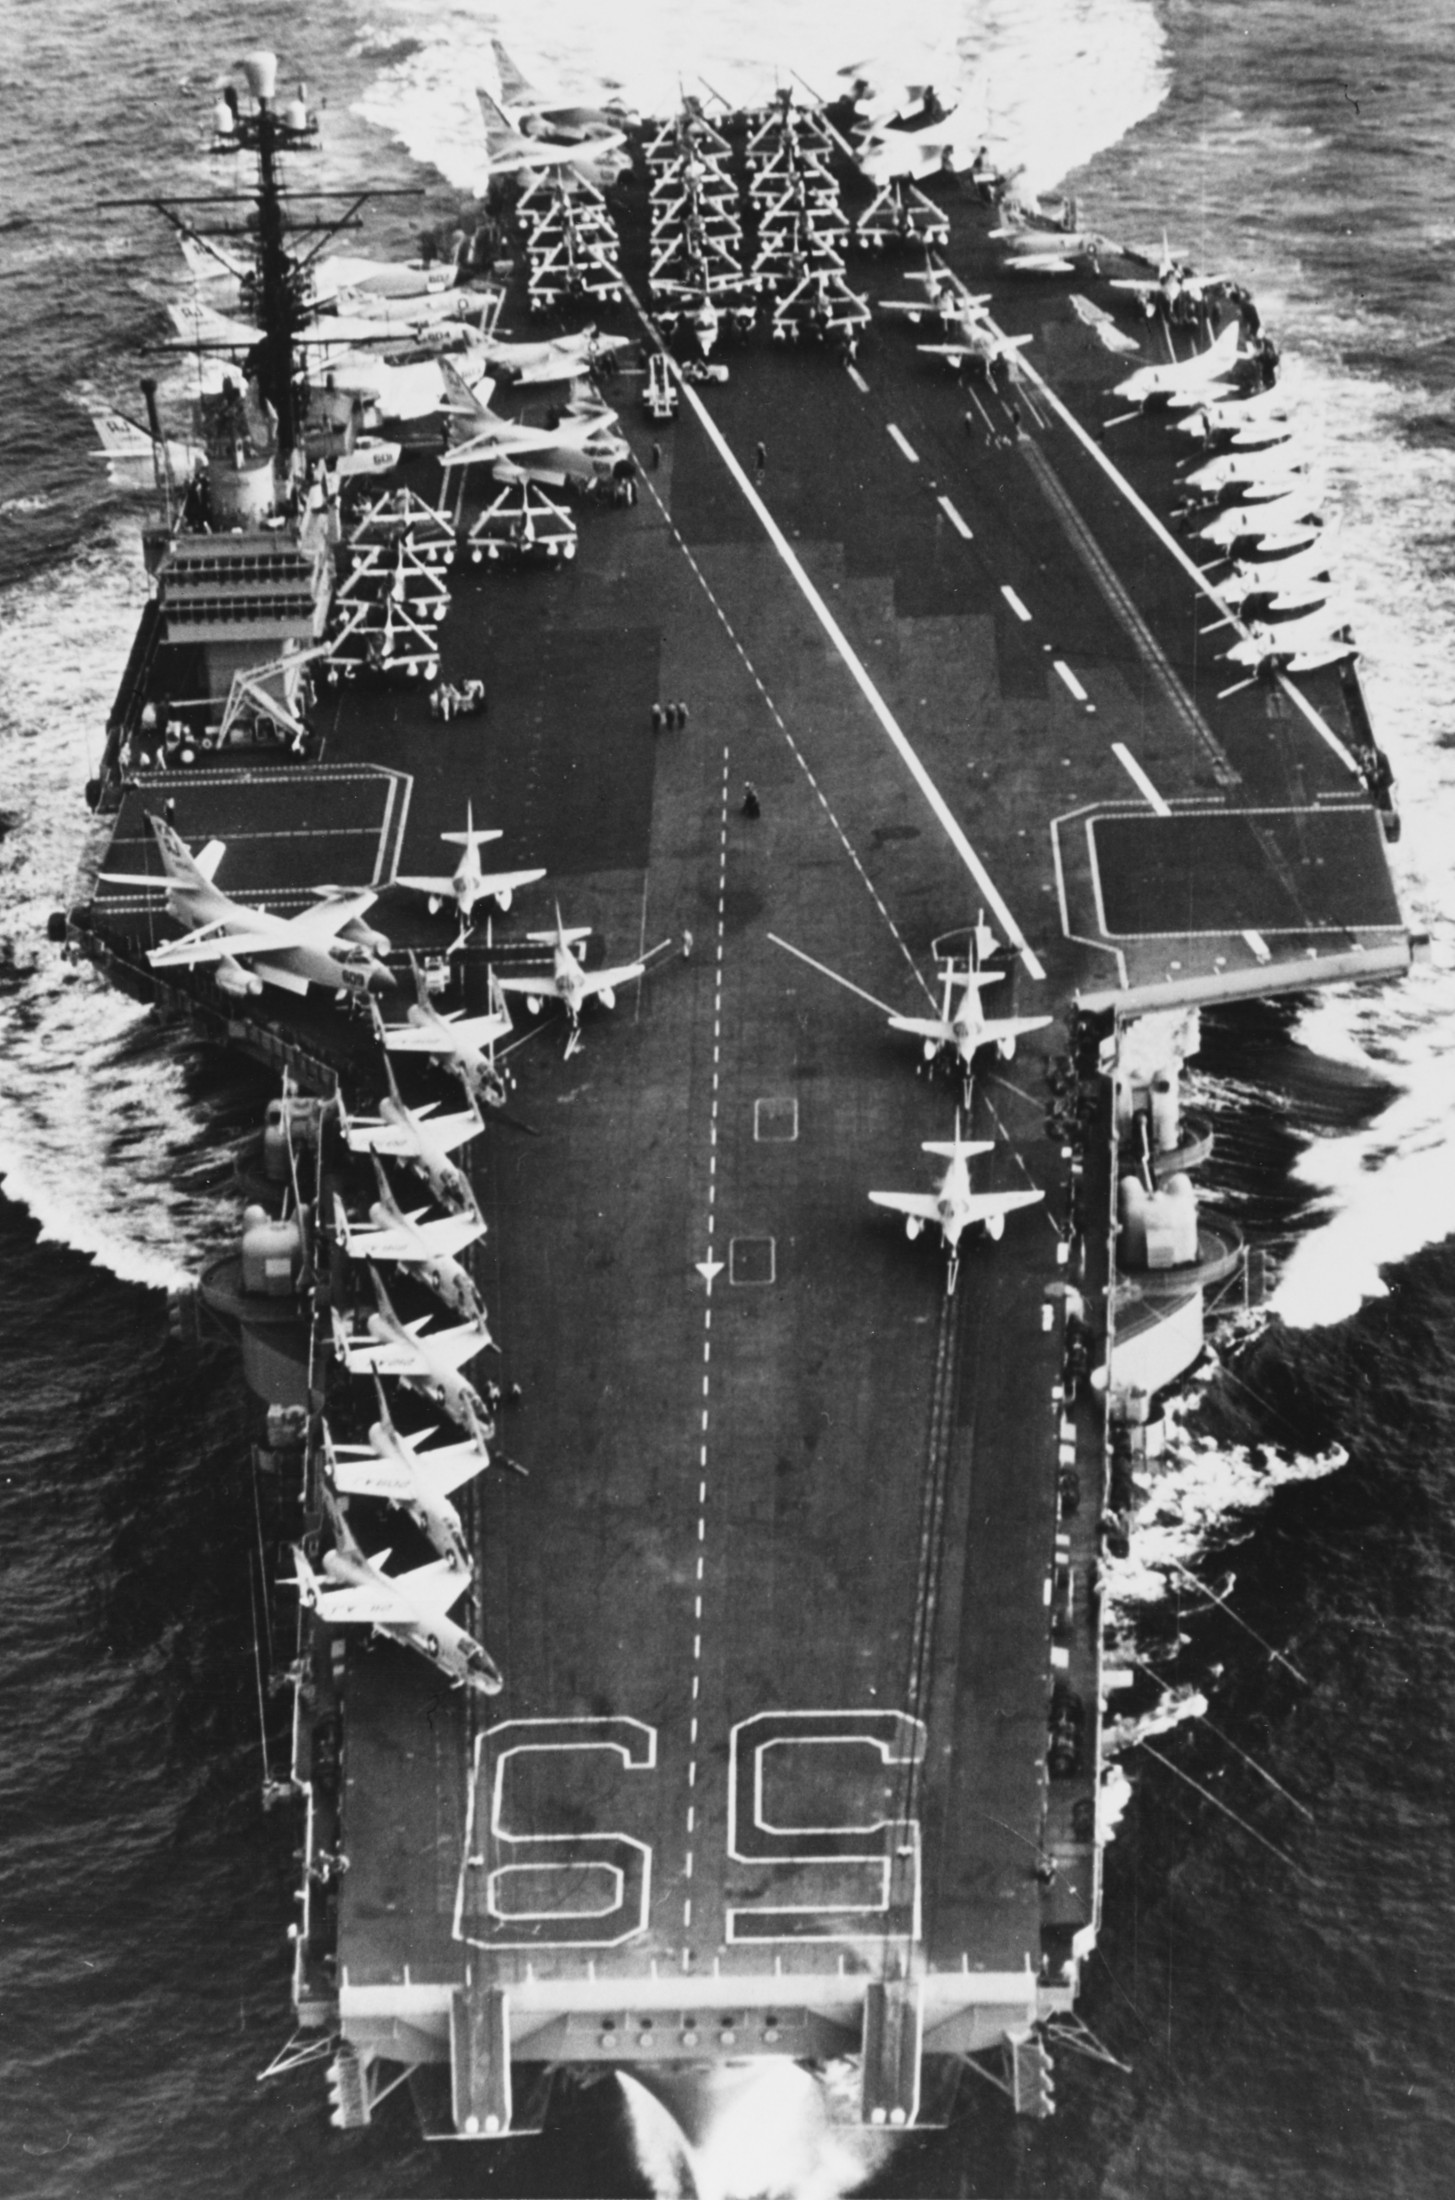 cv-59 uss forrestal aircraft carrier air group cvg-8 us navy 1959 40